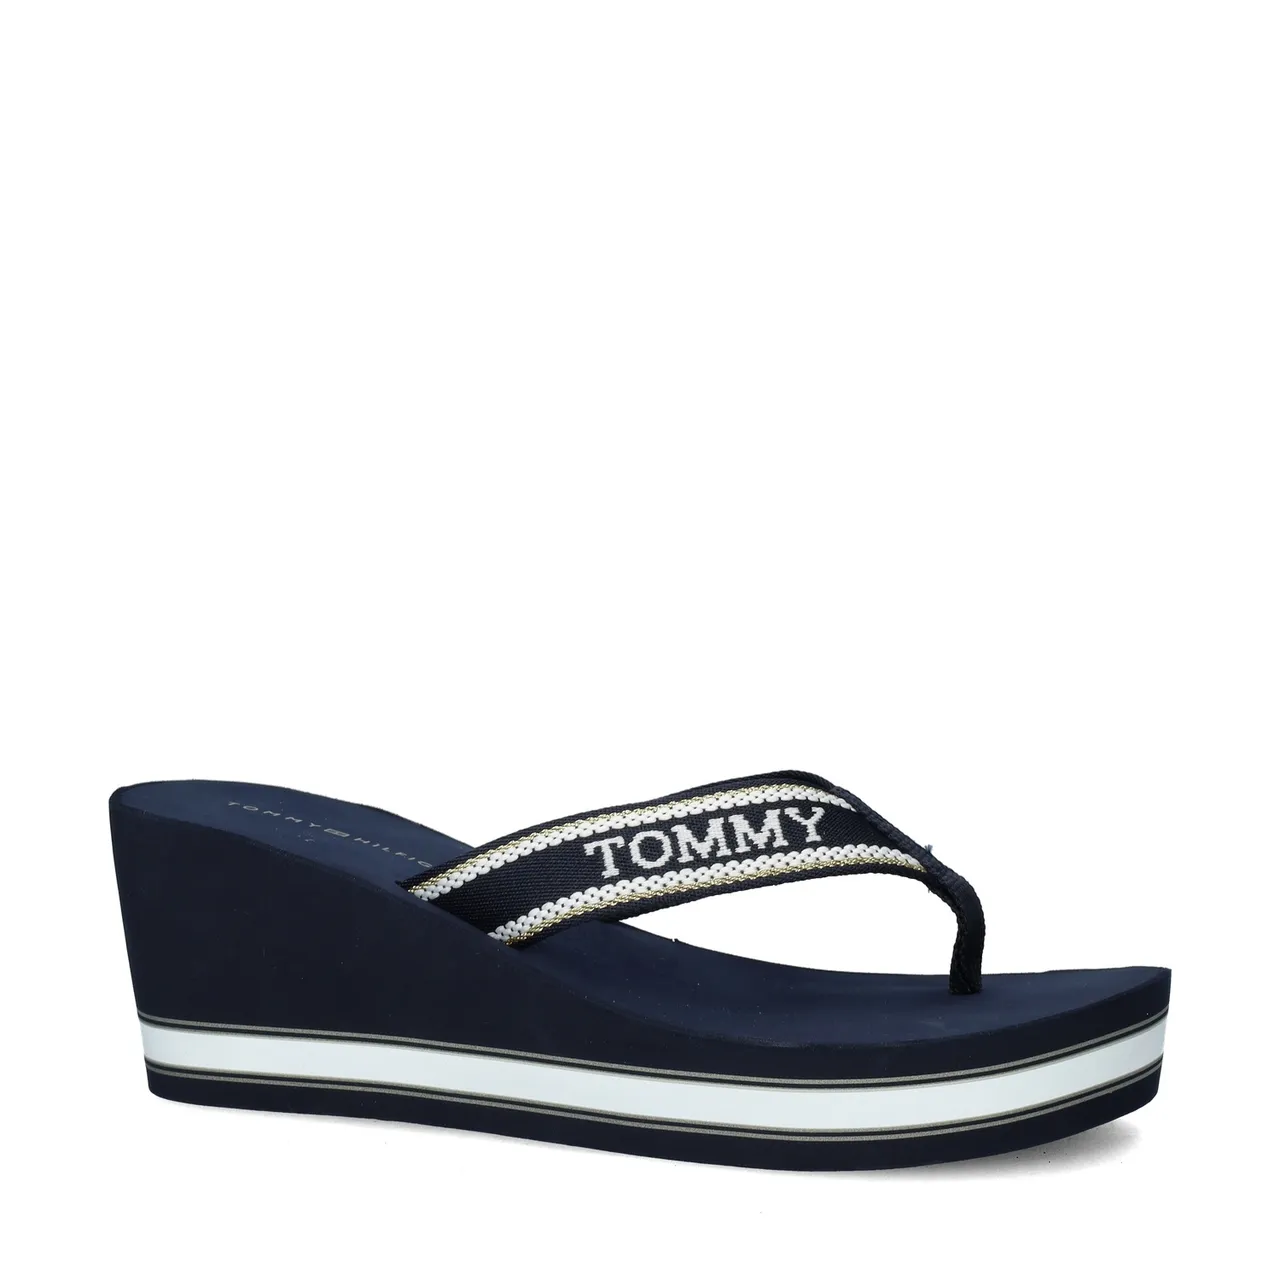 Tommy Hilfiger Sport Wedge Beach sandalen